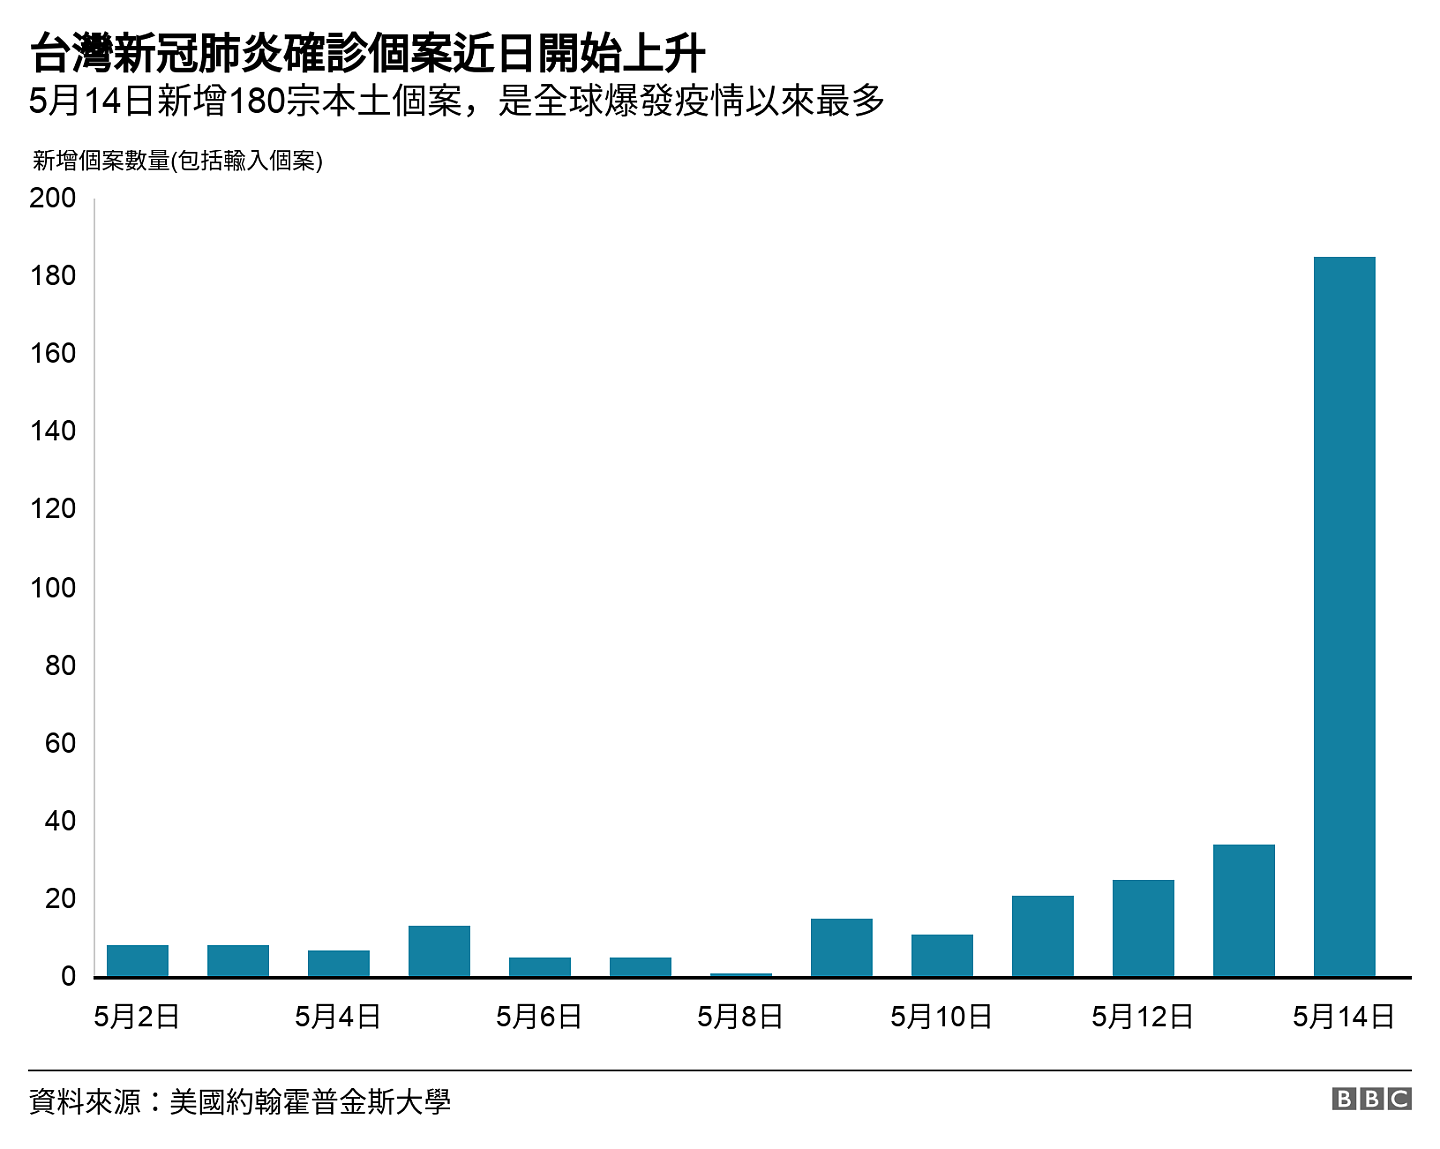 台灣新冠肺炎確診個案近日開始上升. 5月14日新增180宗本土個案，是全球爆發疫情以來最多.  .